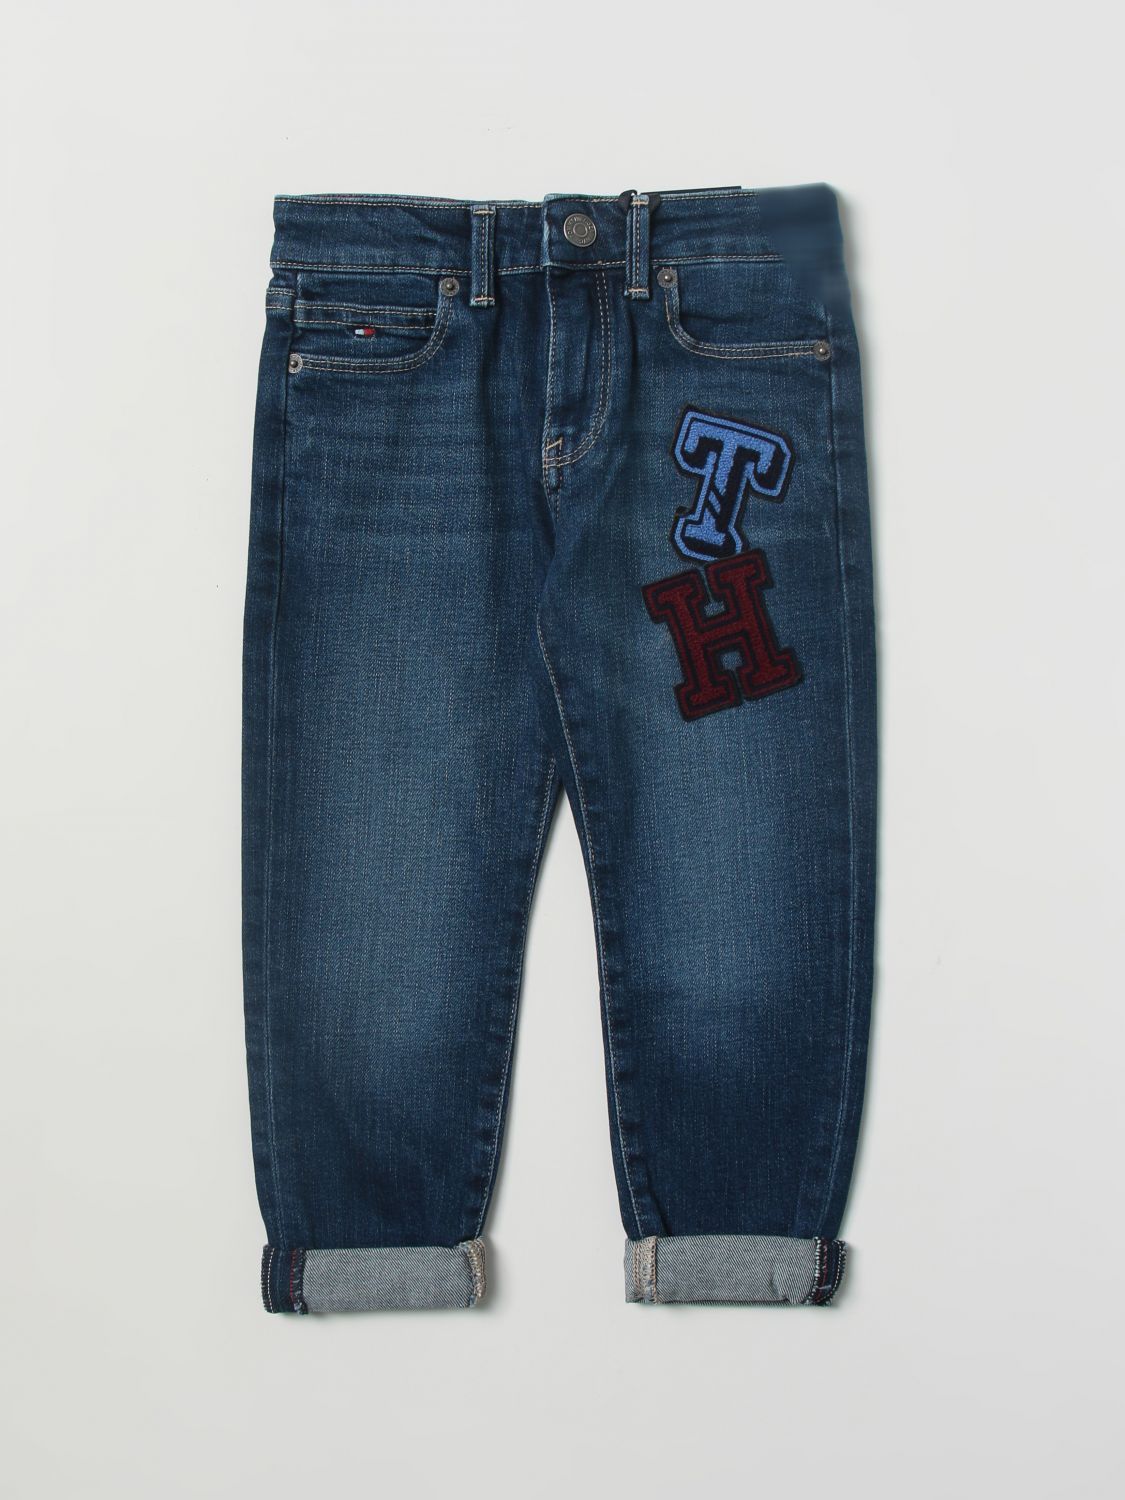 Keer terug Cokes Arne Tommy Hilfiger Outlet: jeans for boys - Blue | Tommy Hilfiger jeans  KB0KB07763 online on GIGLIO.COM